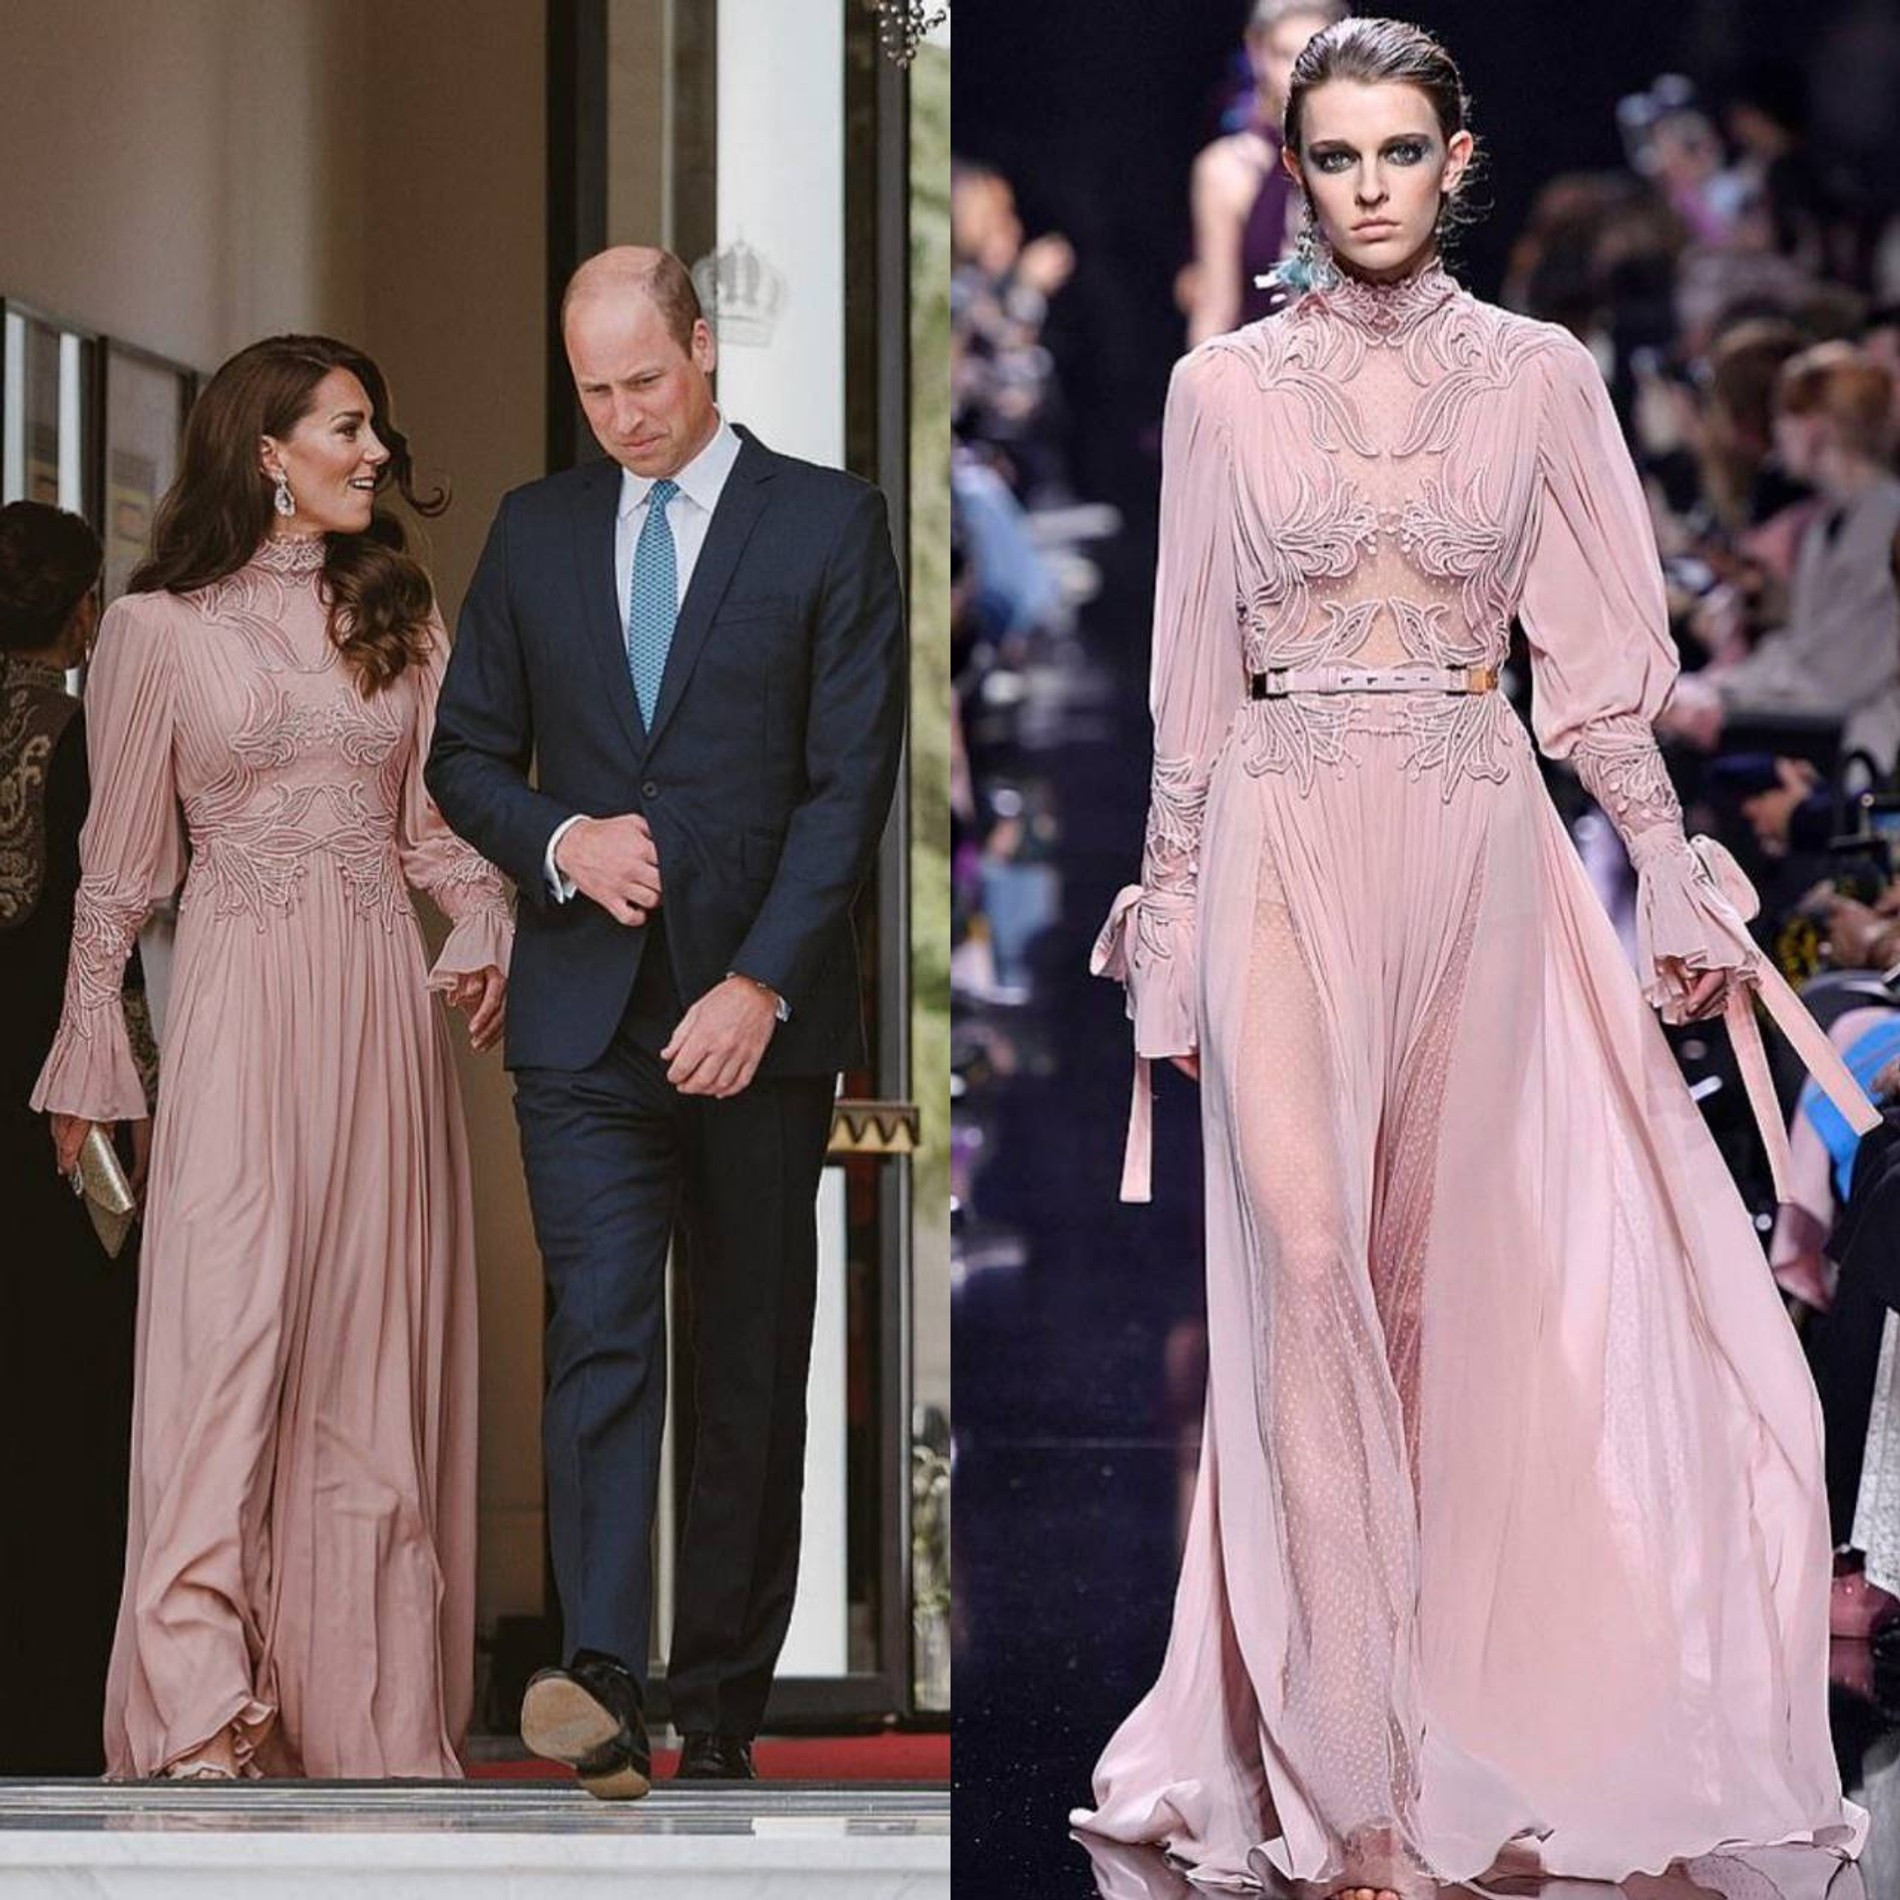 Кейт Миддлтон и принц Уильям на свадьбе принца Иордании Хусейна; модель на показе Elie Saab
Коллаж Super